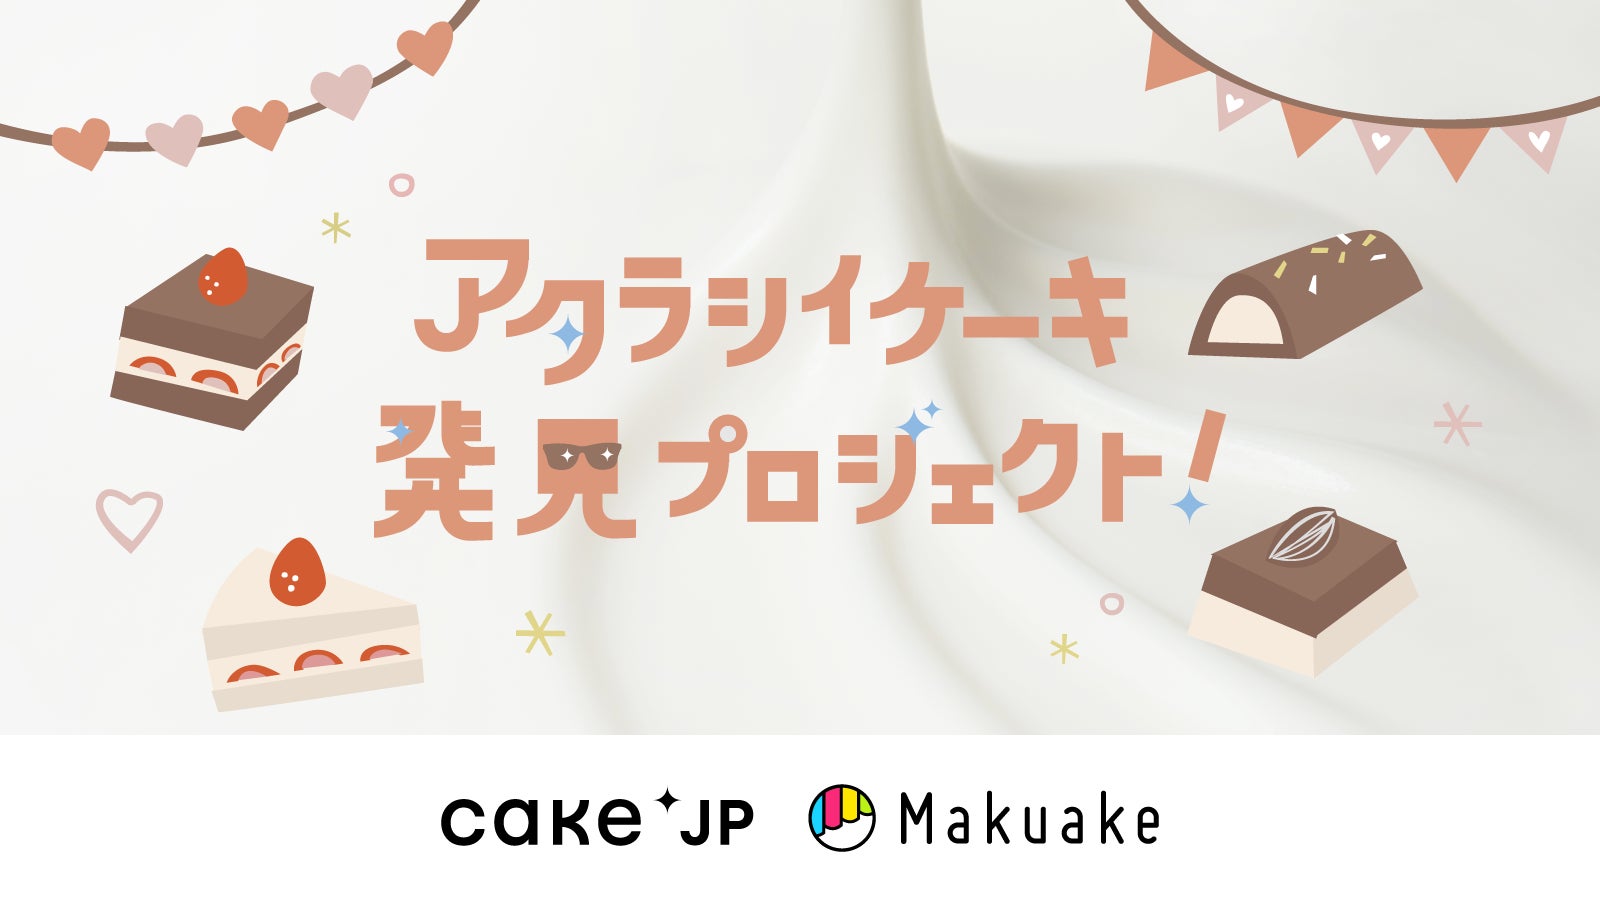 Makuake目標達成率1824％の期待のスイーツがCake.jpに登場！ご当地食材をスイーツにアレンジした「アタラシイケーキ発見プロジェクト」での人気商品を9月6日より販売開始のサブ画像1